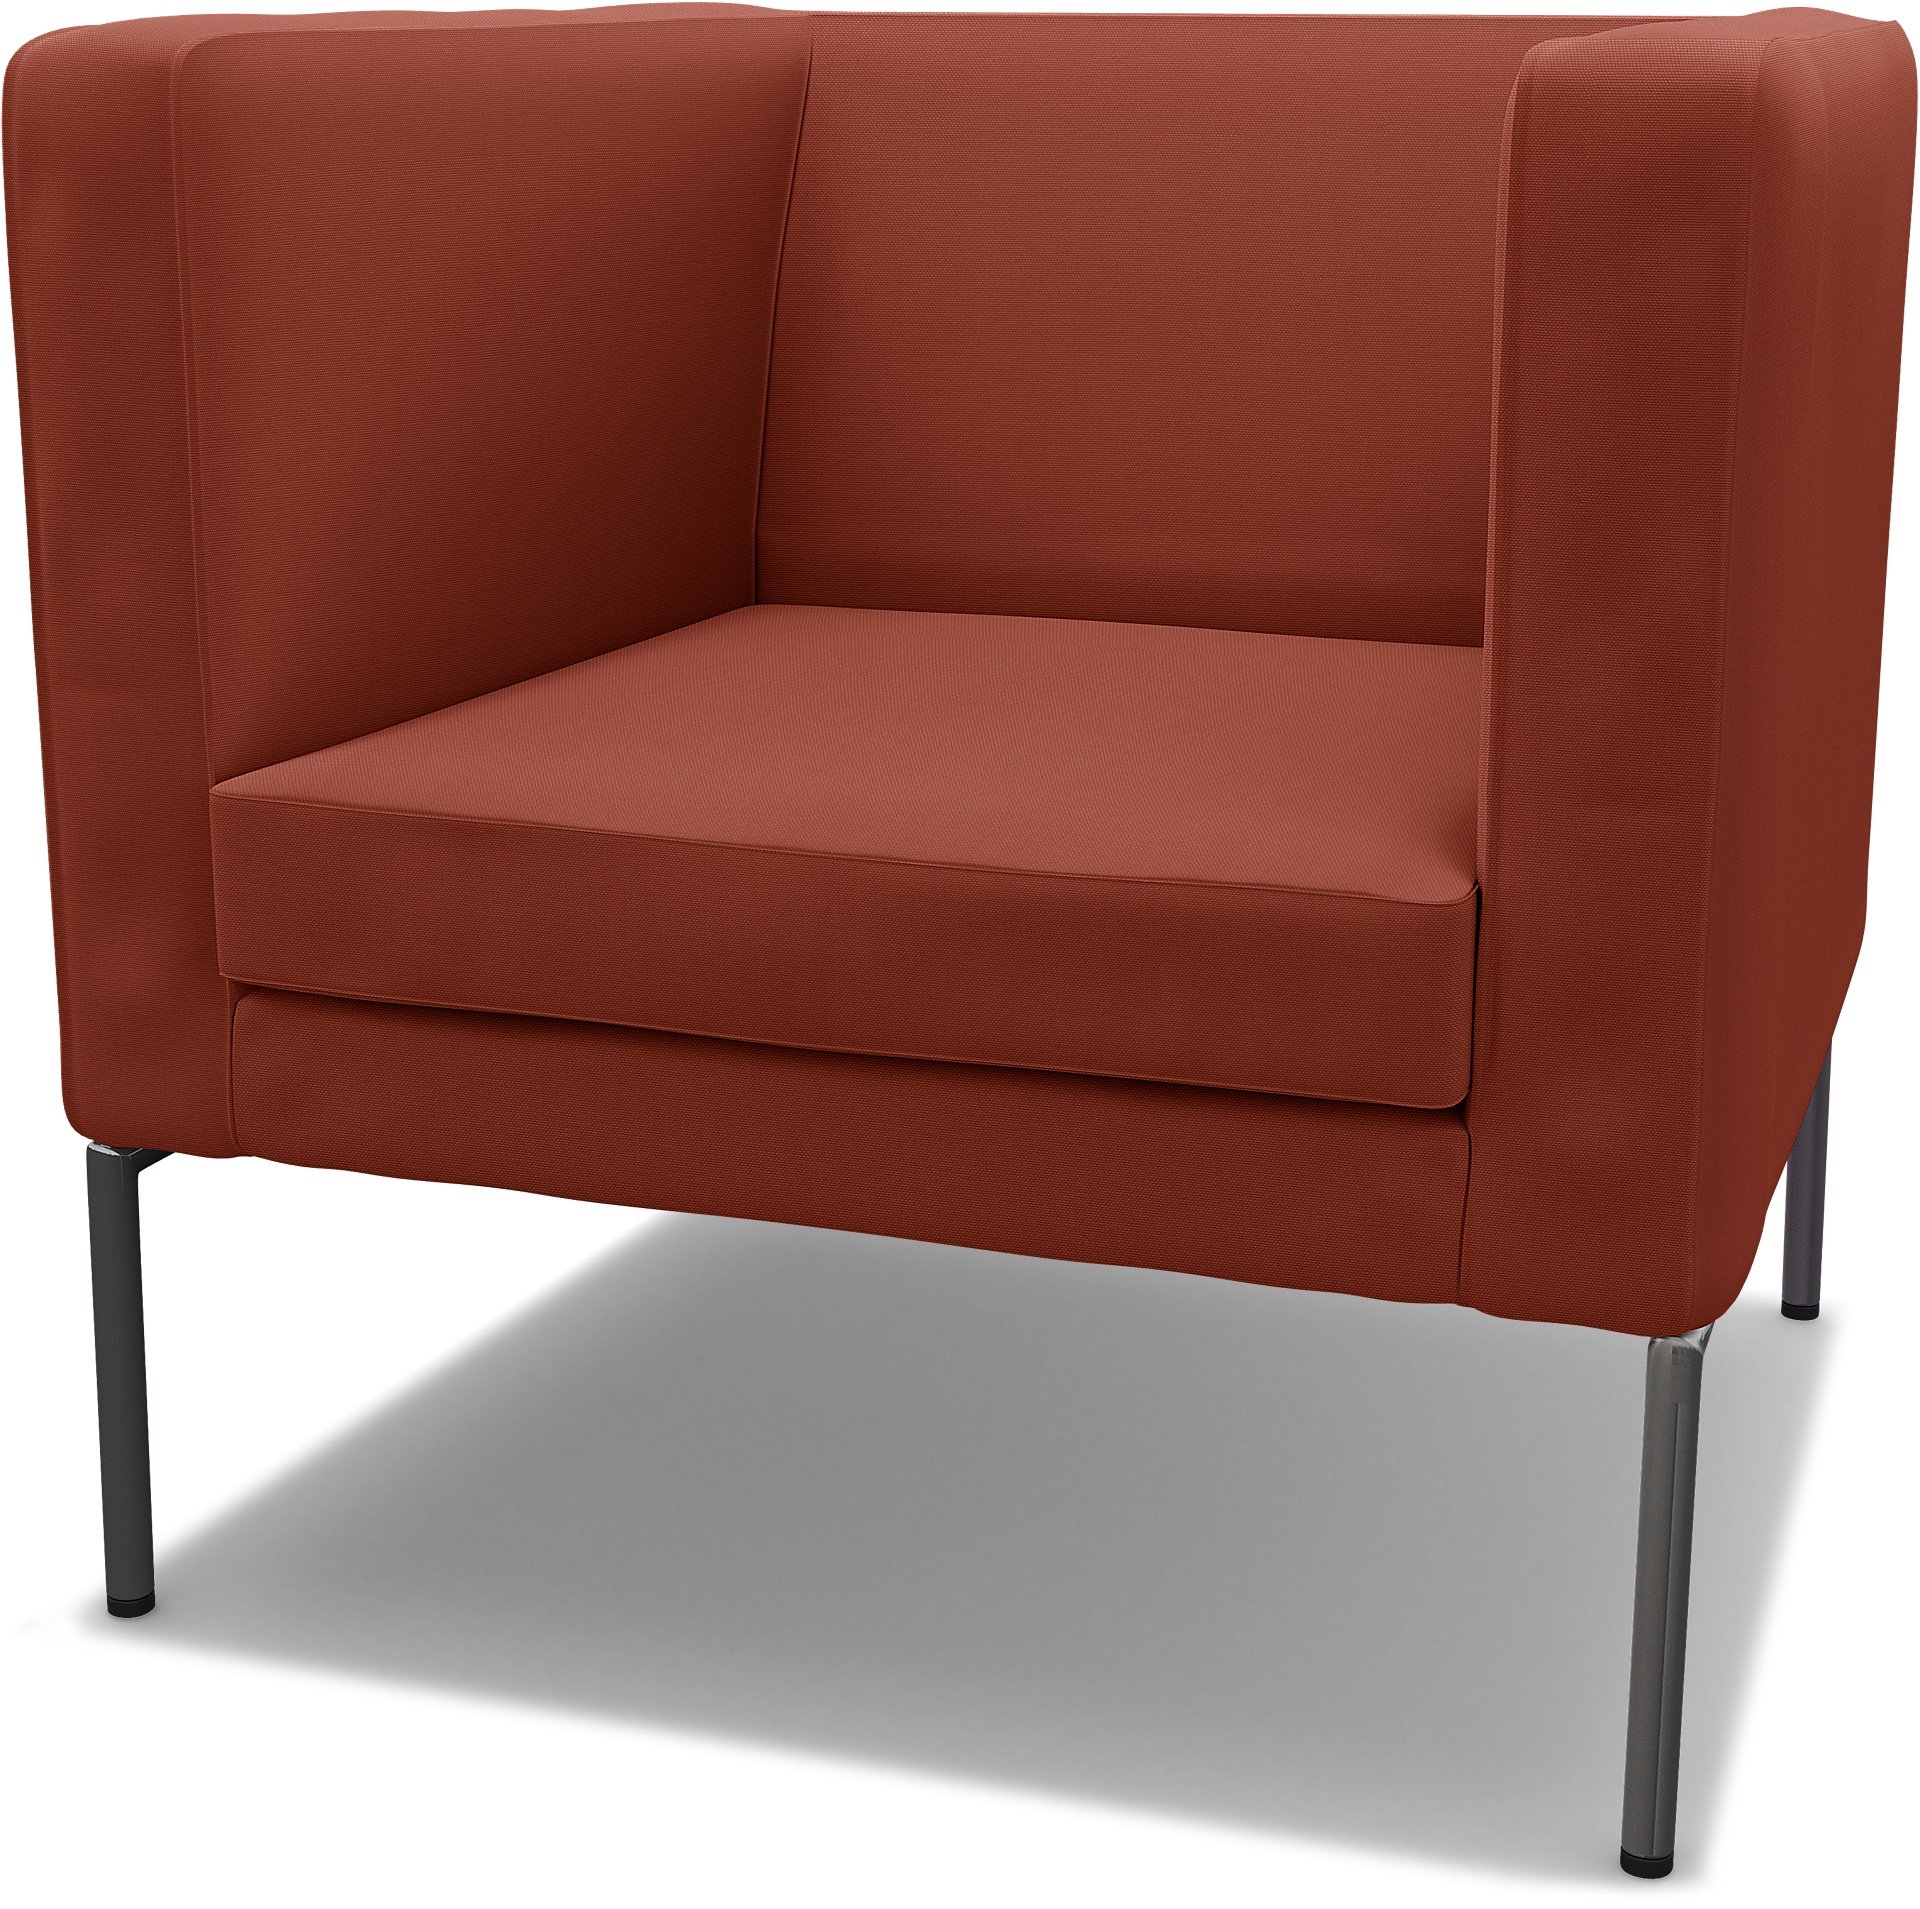 IKEA - Klappsta Armchair Cover, Burnt Orange, Cotton - Bemz